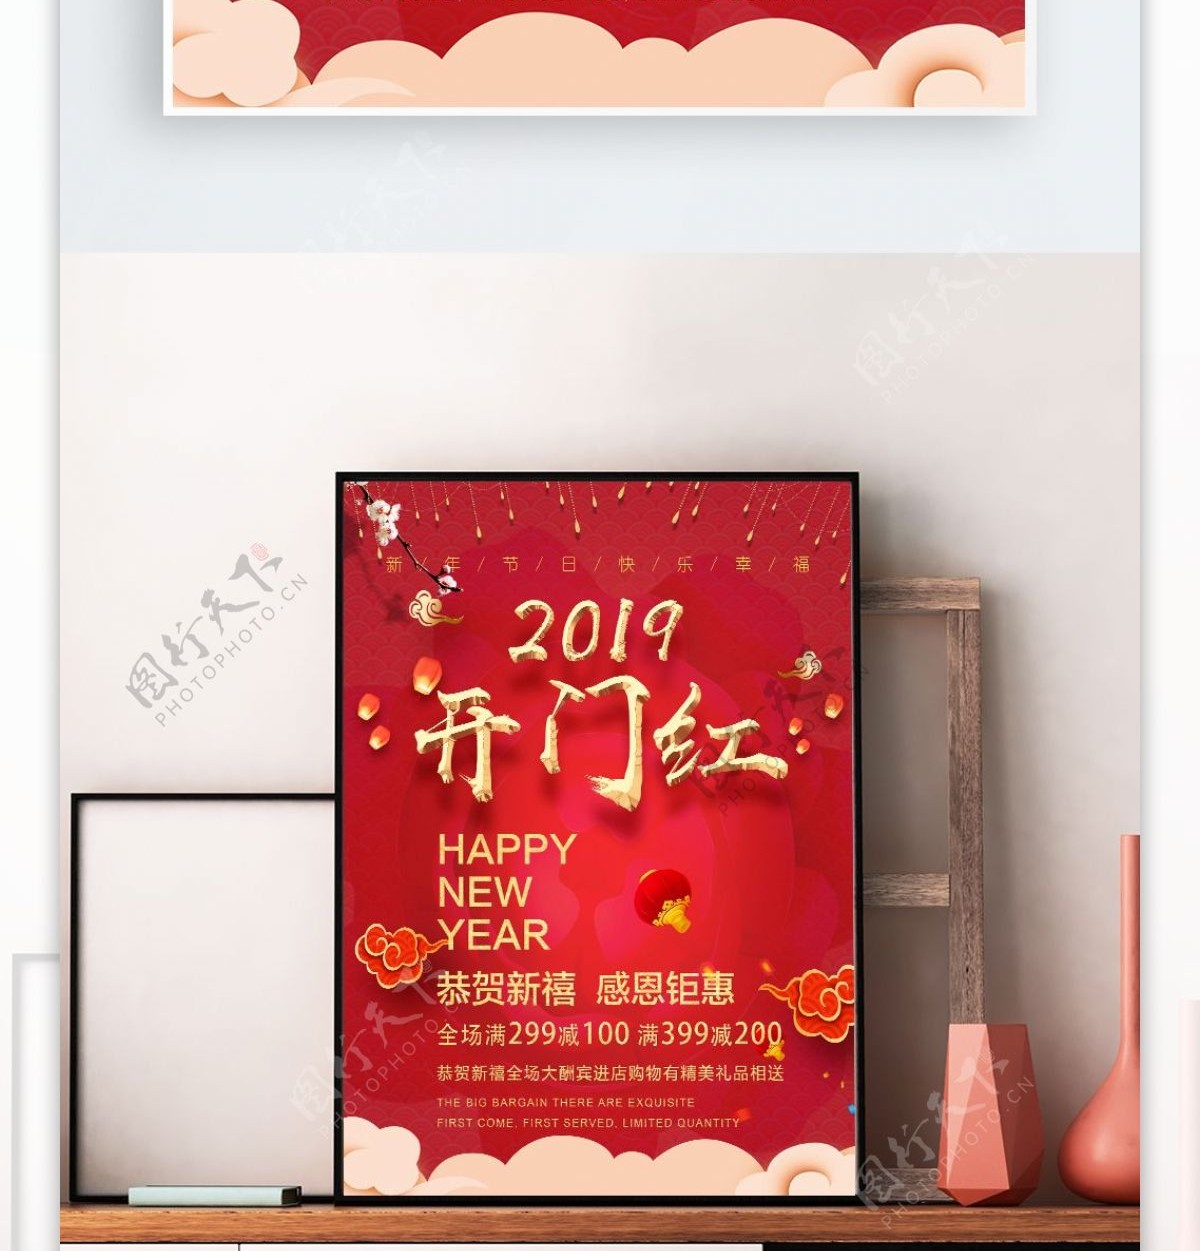 2019新年开门红节日快乐幸福海报